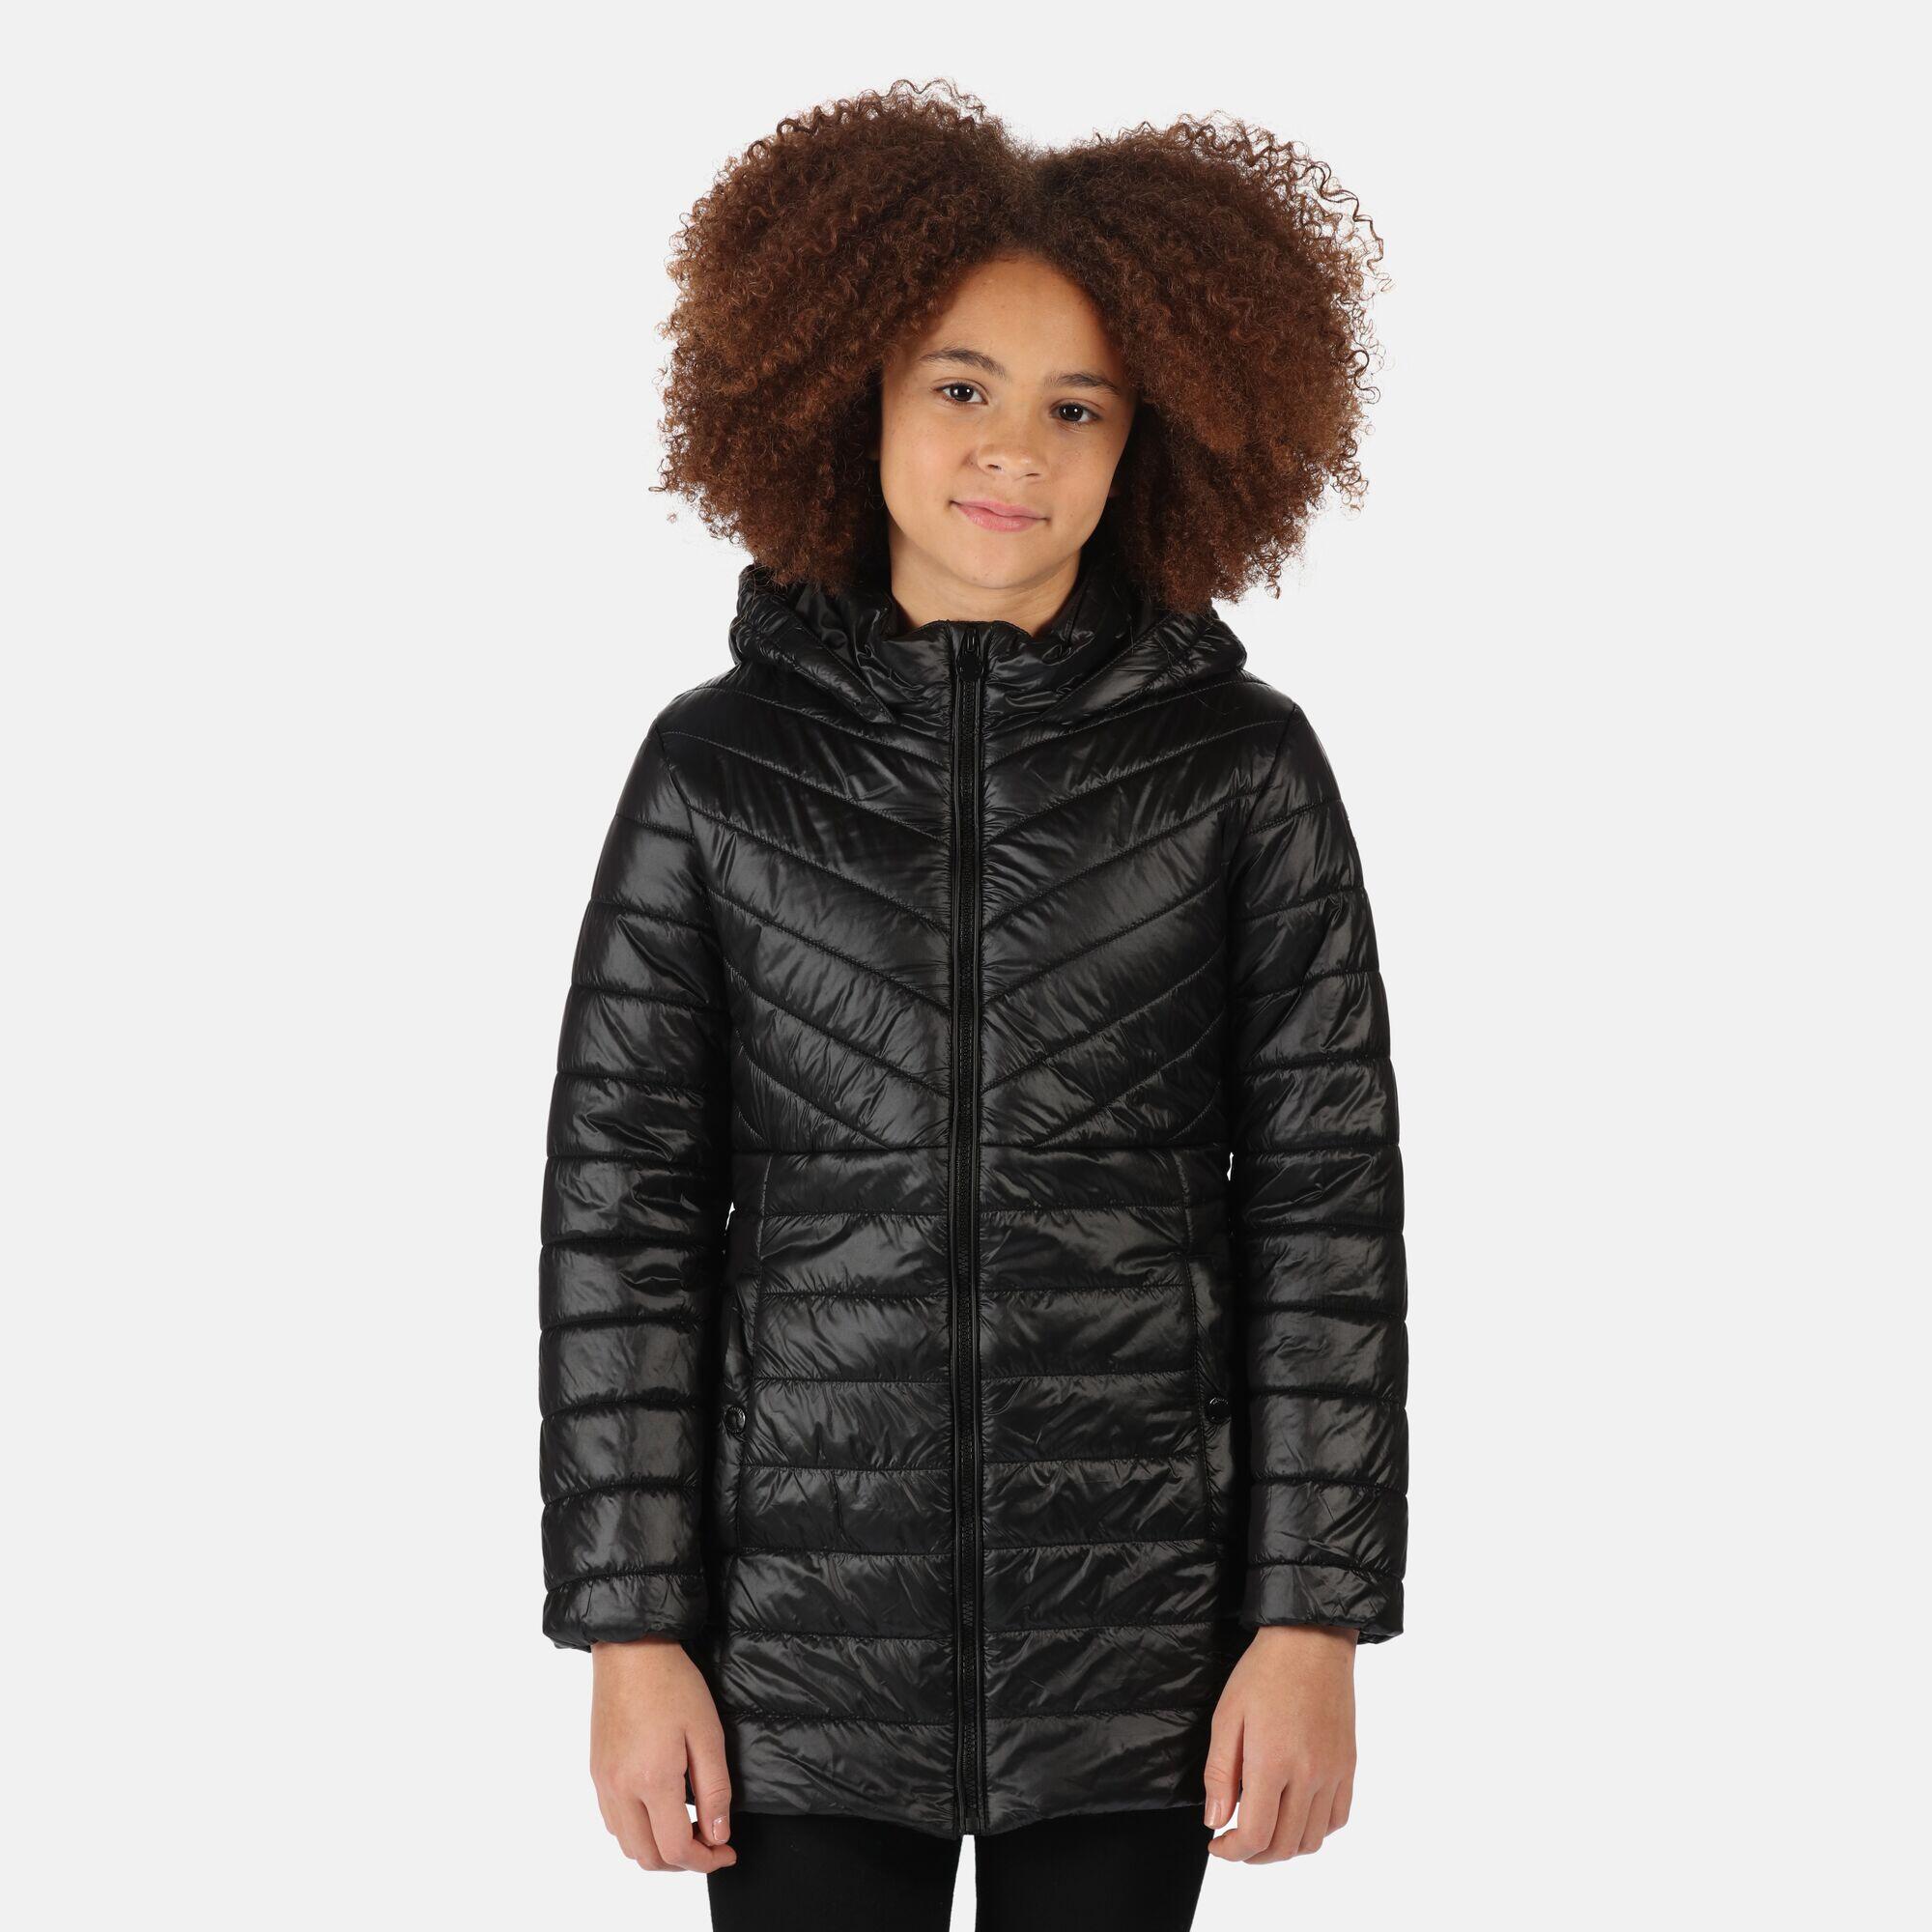 REGATTA Kids' Babette Insulated Jacket